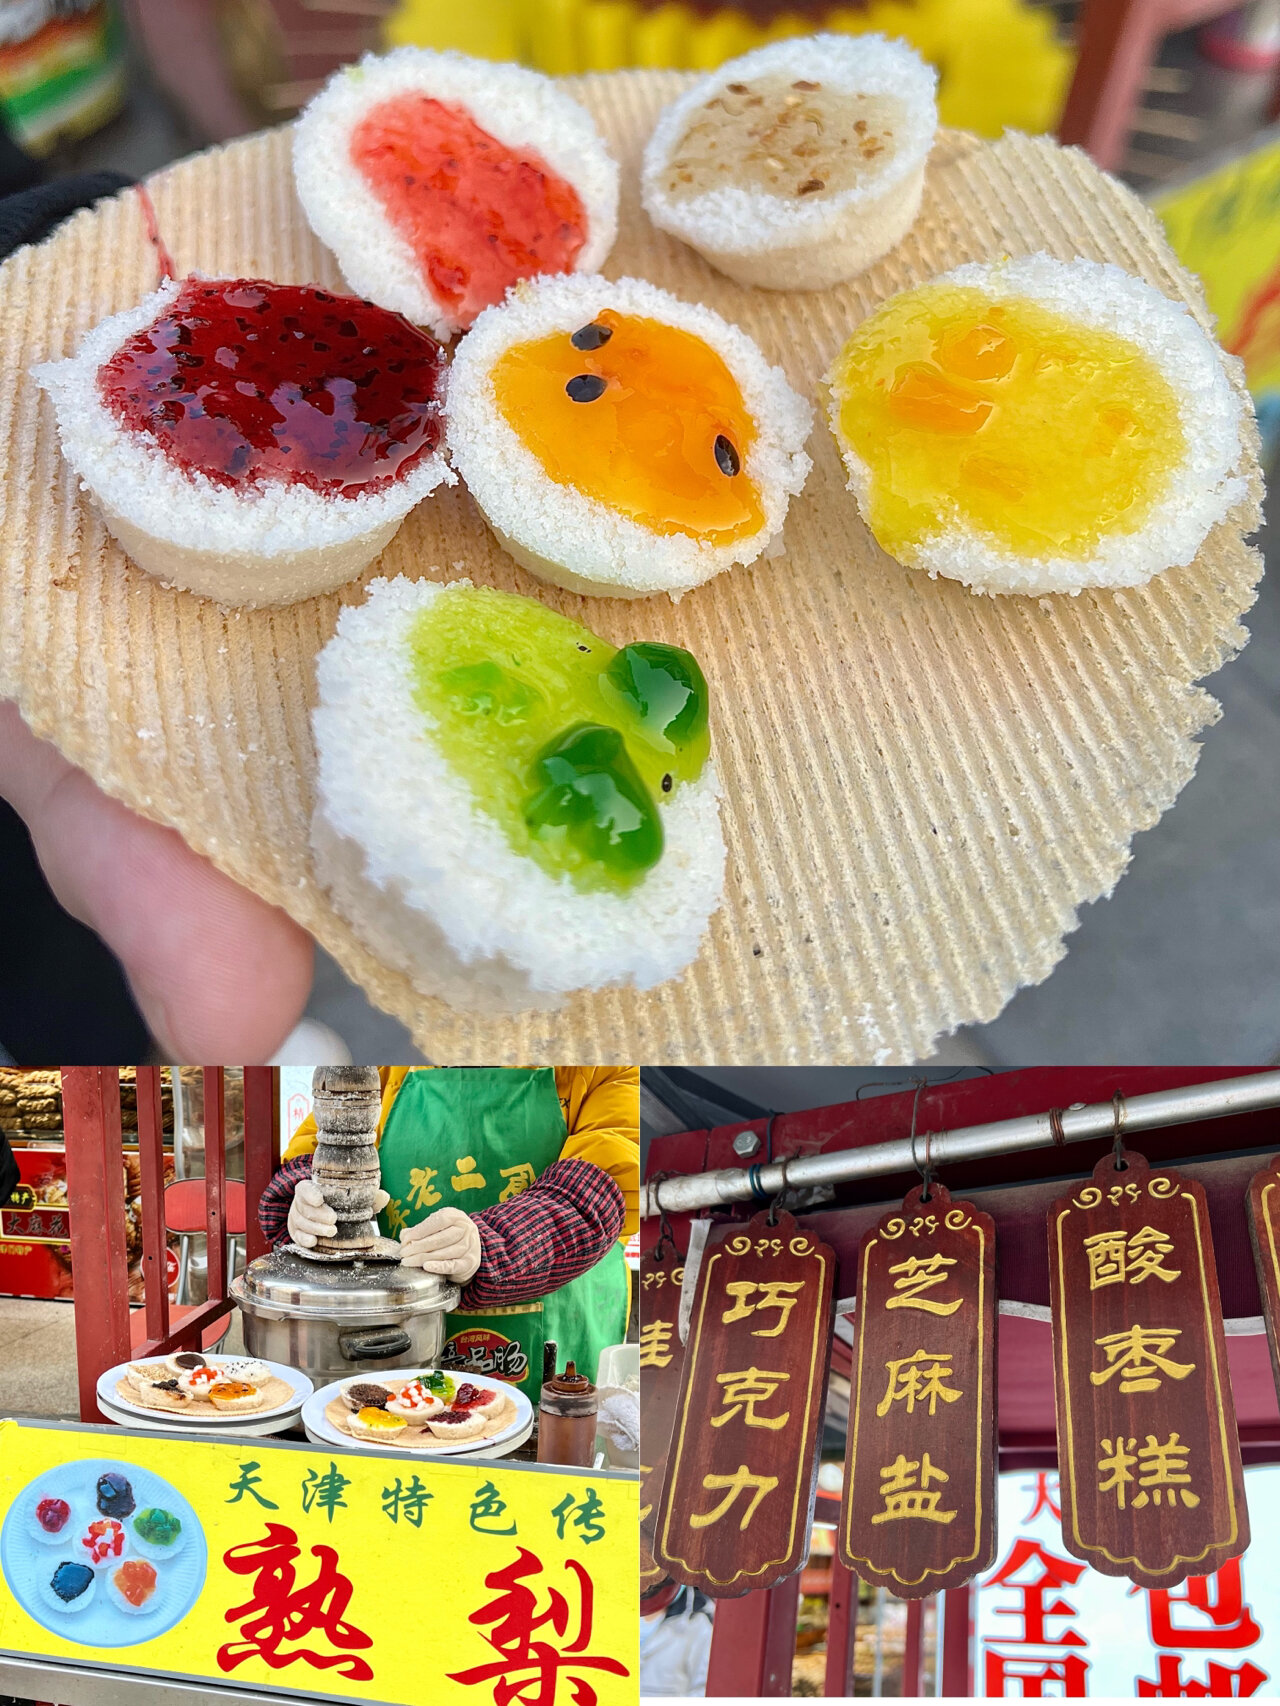 天津古文化街美食图片